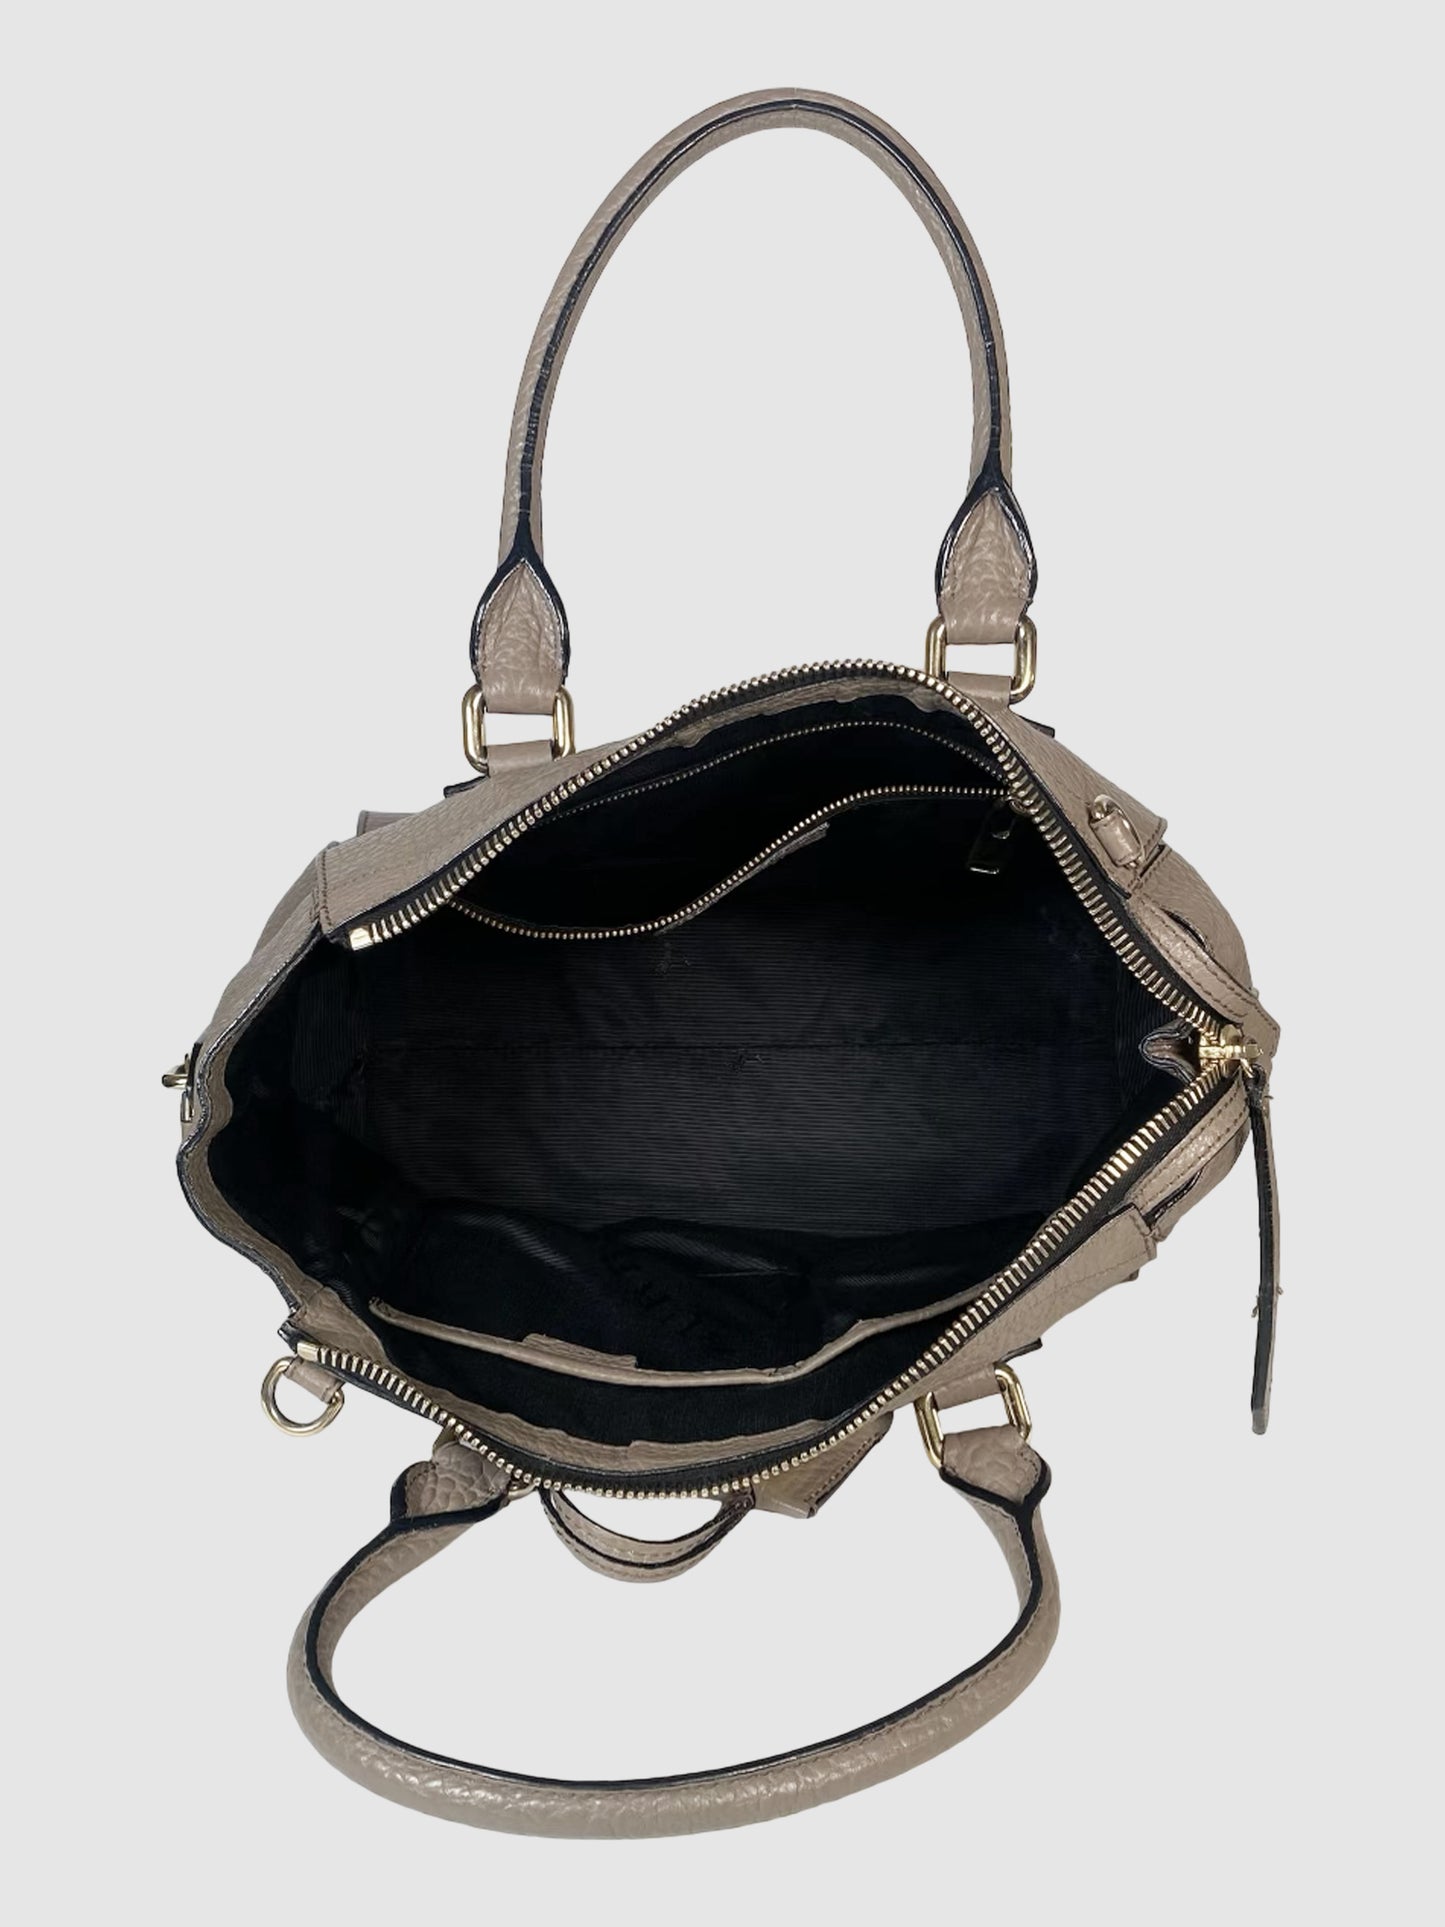 Burberry Heritage Small Handbag